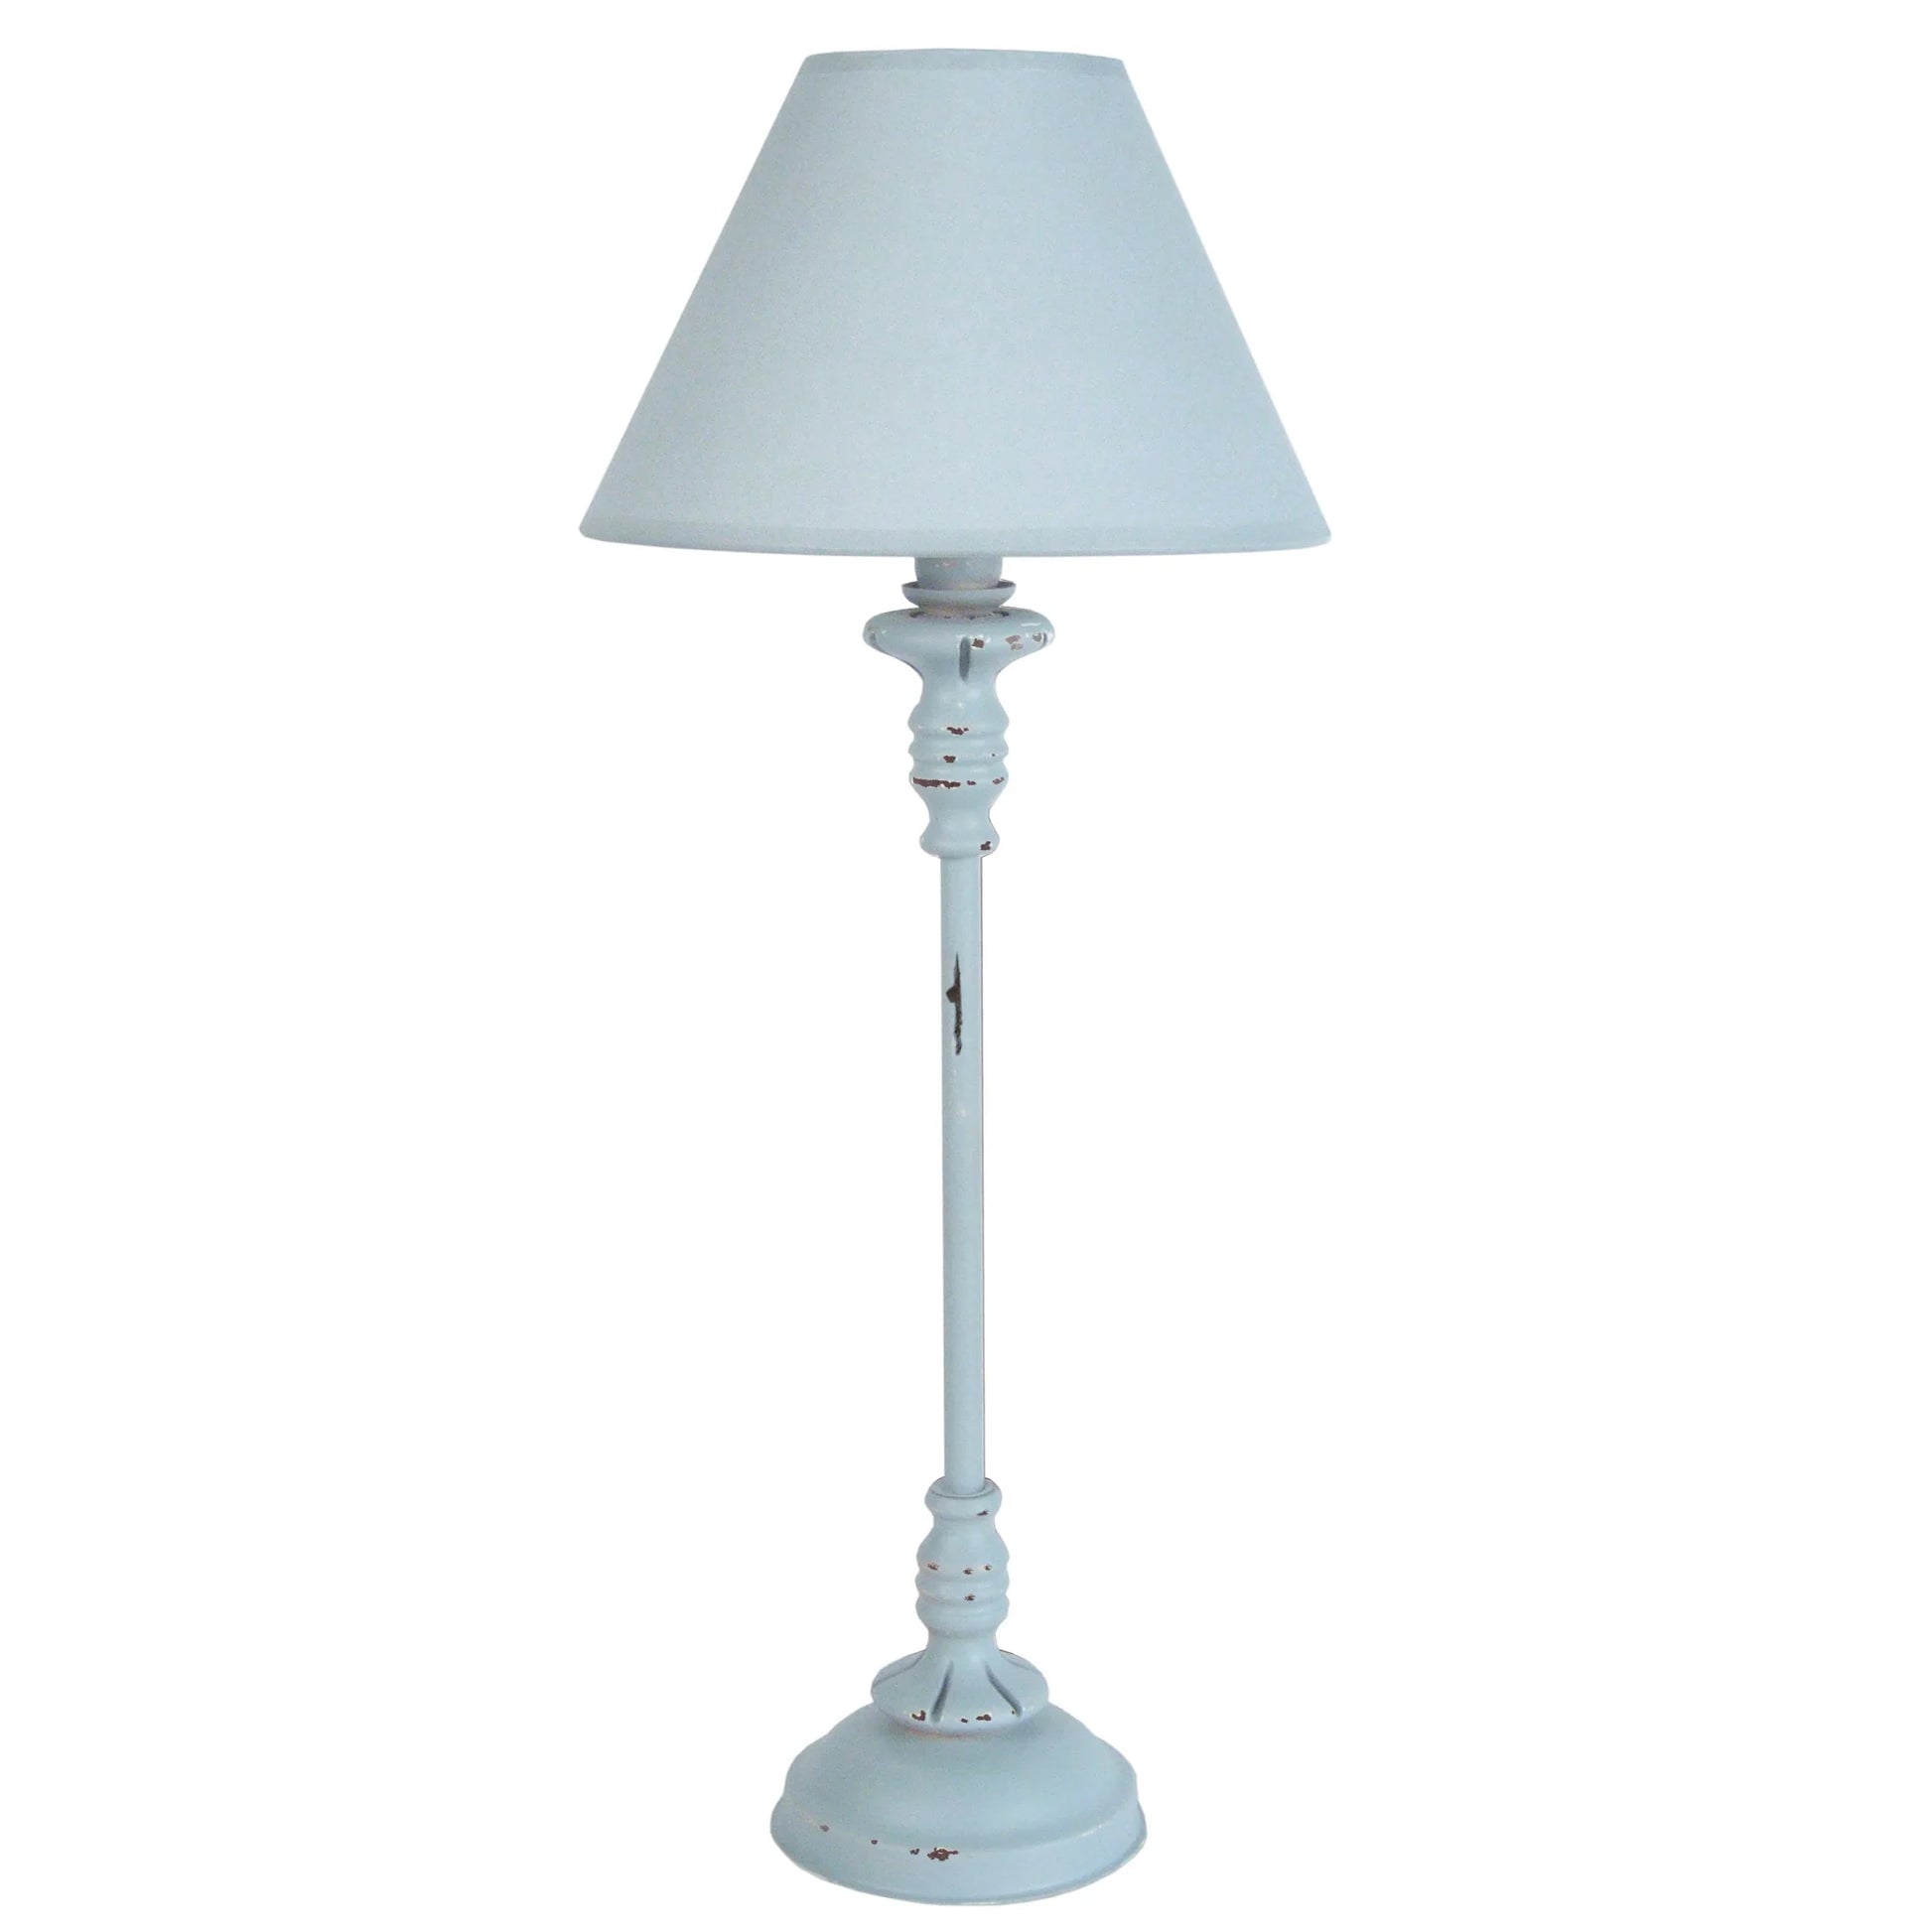 Une lampe vintage en bois de couleur bleu/gris